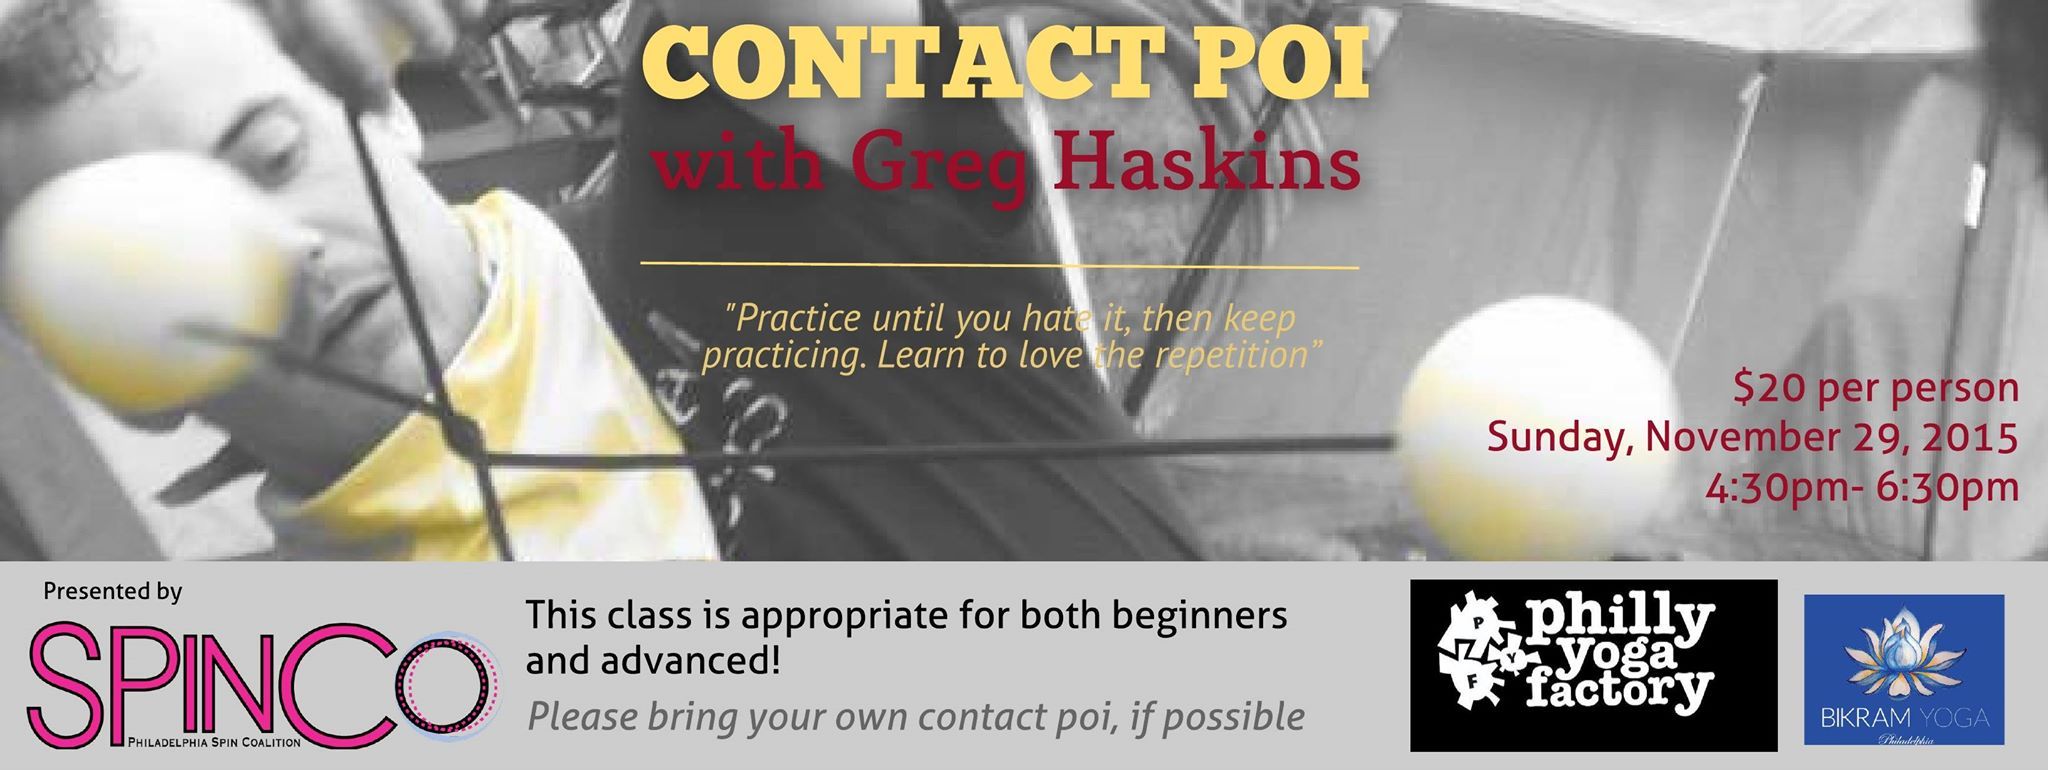 Contact Poi Greg Haskins 2016